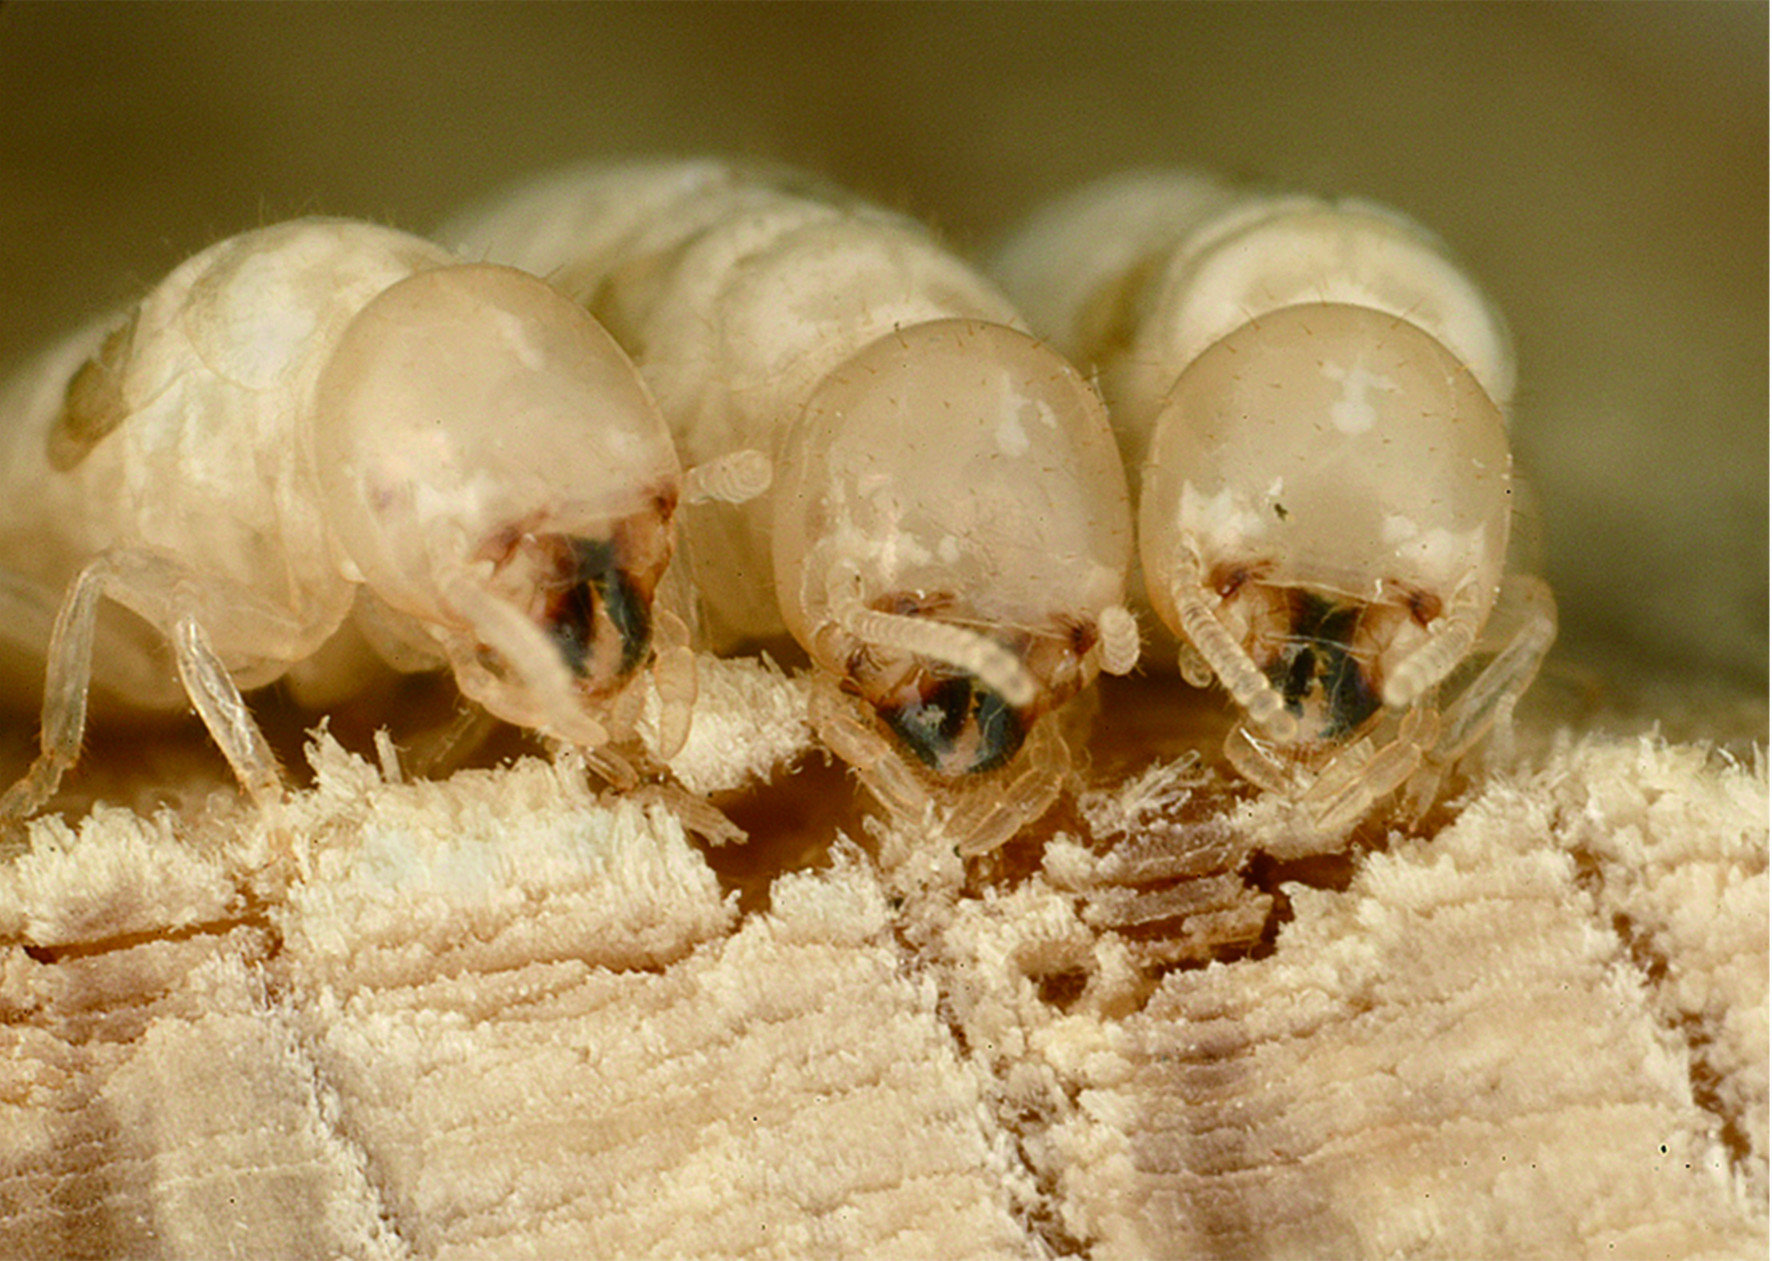 乾木白蟻其實就是「木白蟻科」的俗稱，台灣常見的品種為「截頭堆砂白蟻」。乾木白蟻喜歡啃食乾燥木頭，會對家中各種木製物品造成破壞。